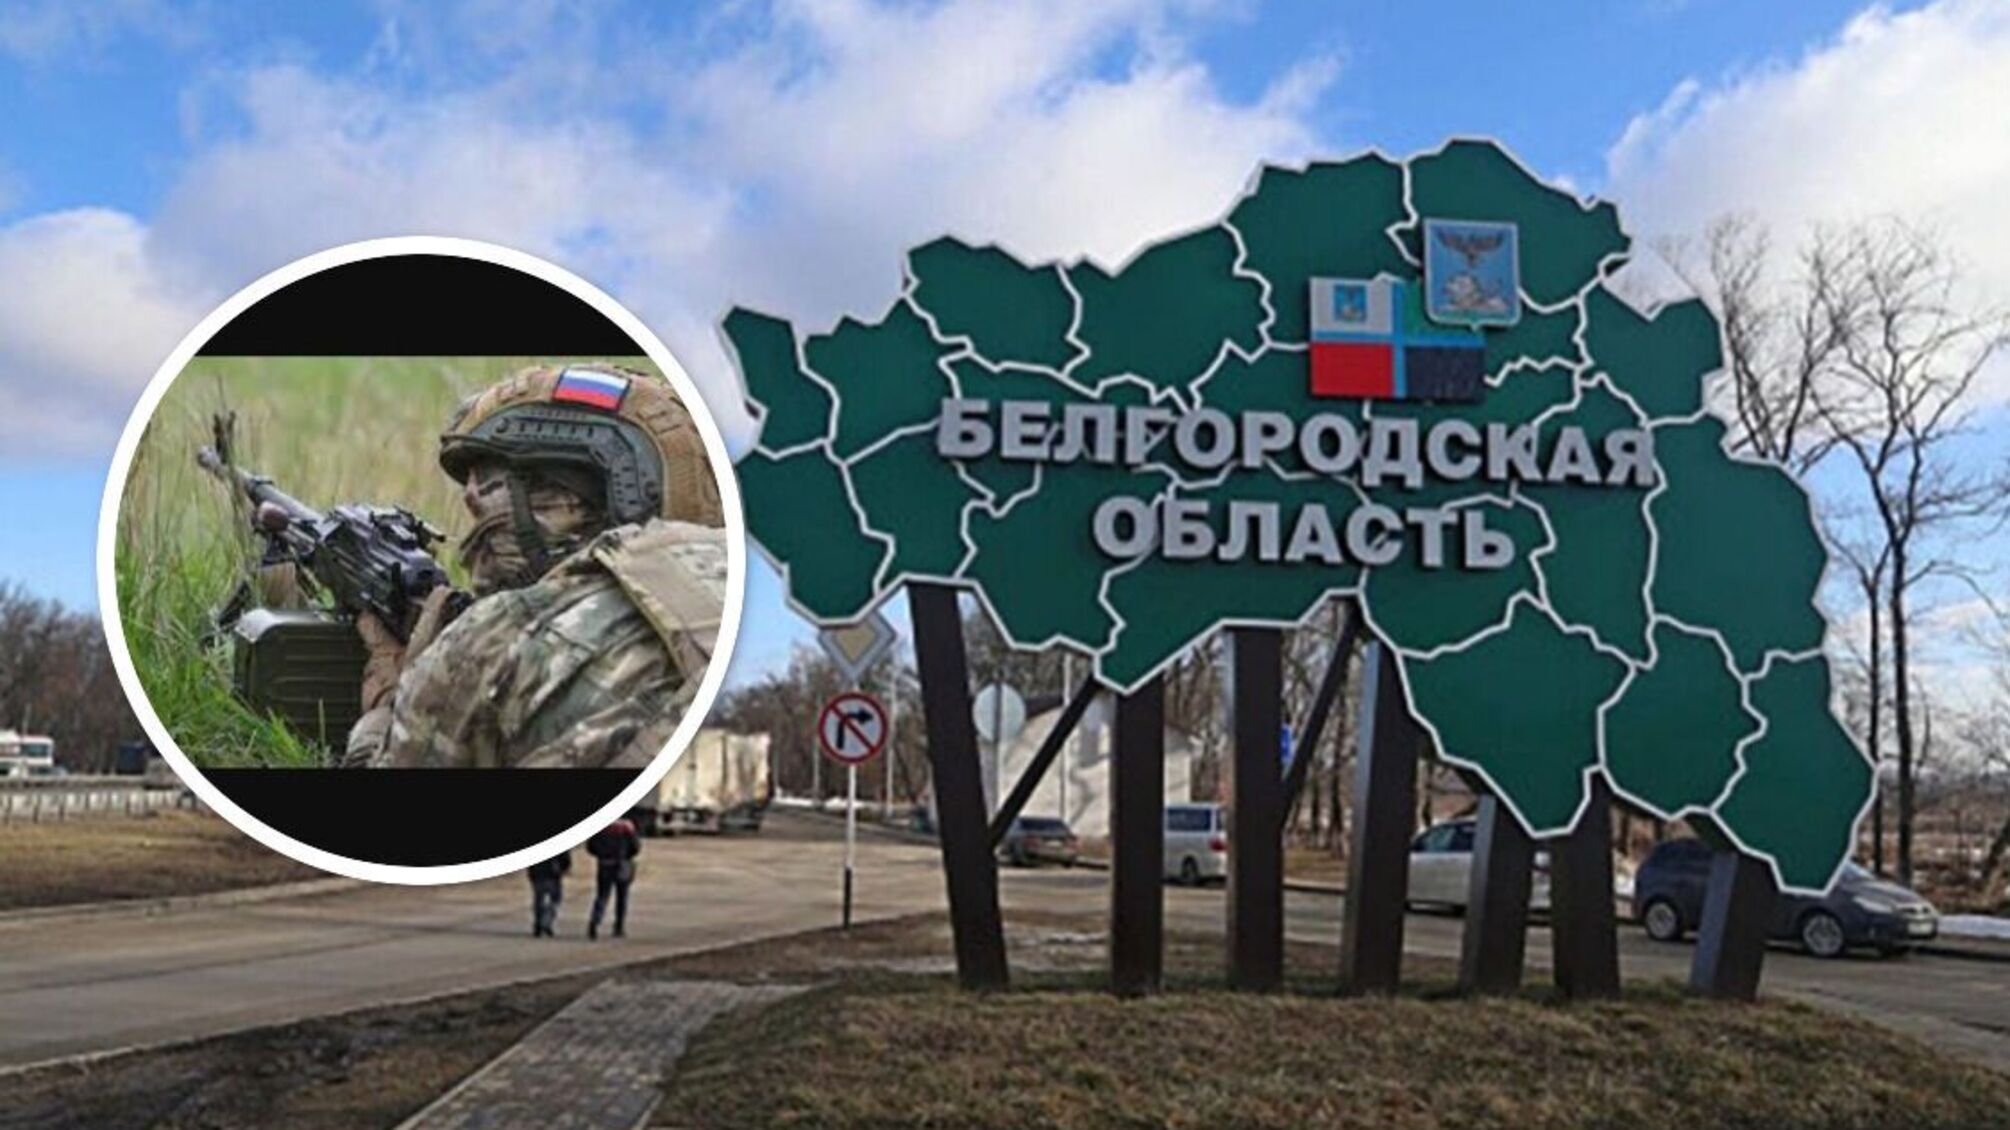 'Прорив ДРГ' у Білгородській області  - версія влади рф щодо подій на кордоні 